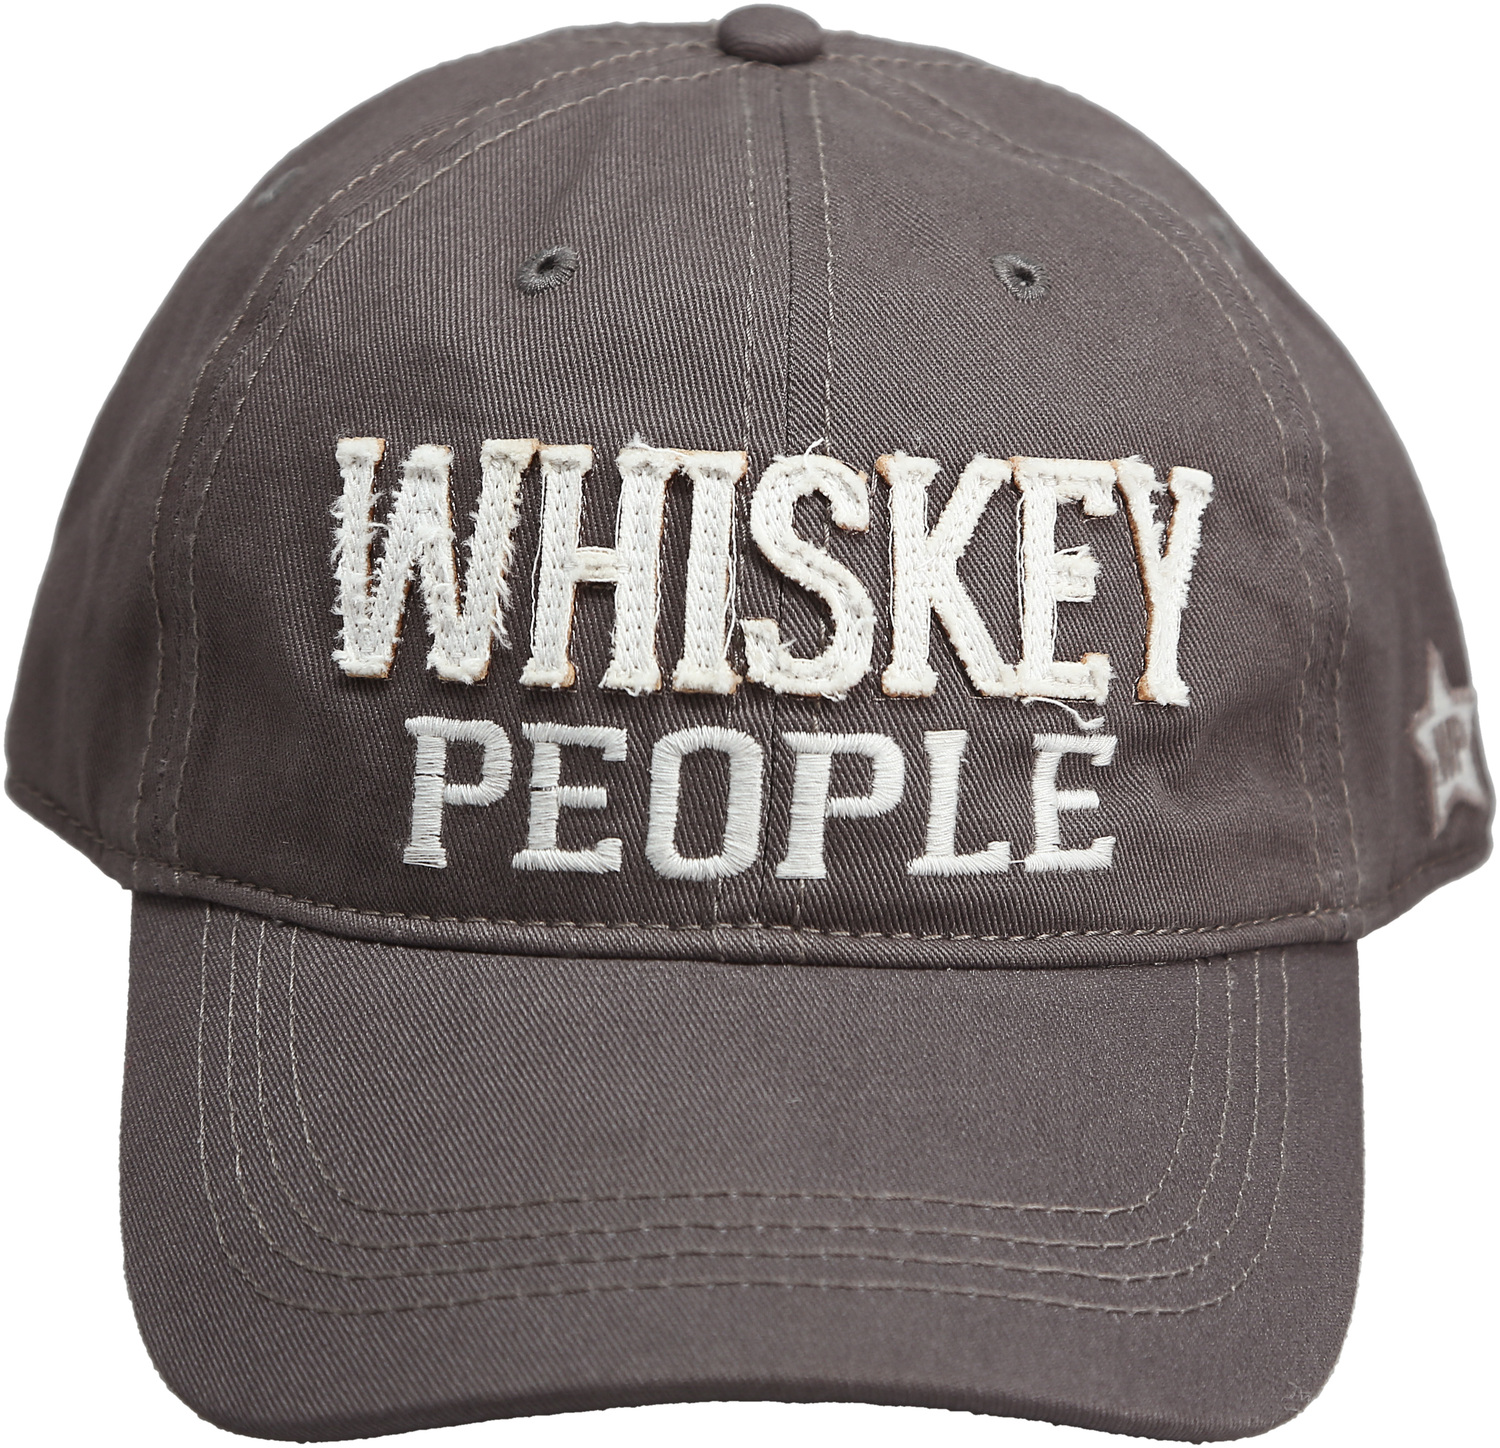 Whiskey People by We People - Whiskey People - Dark Gray Adjustable Hat